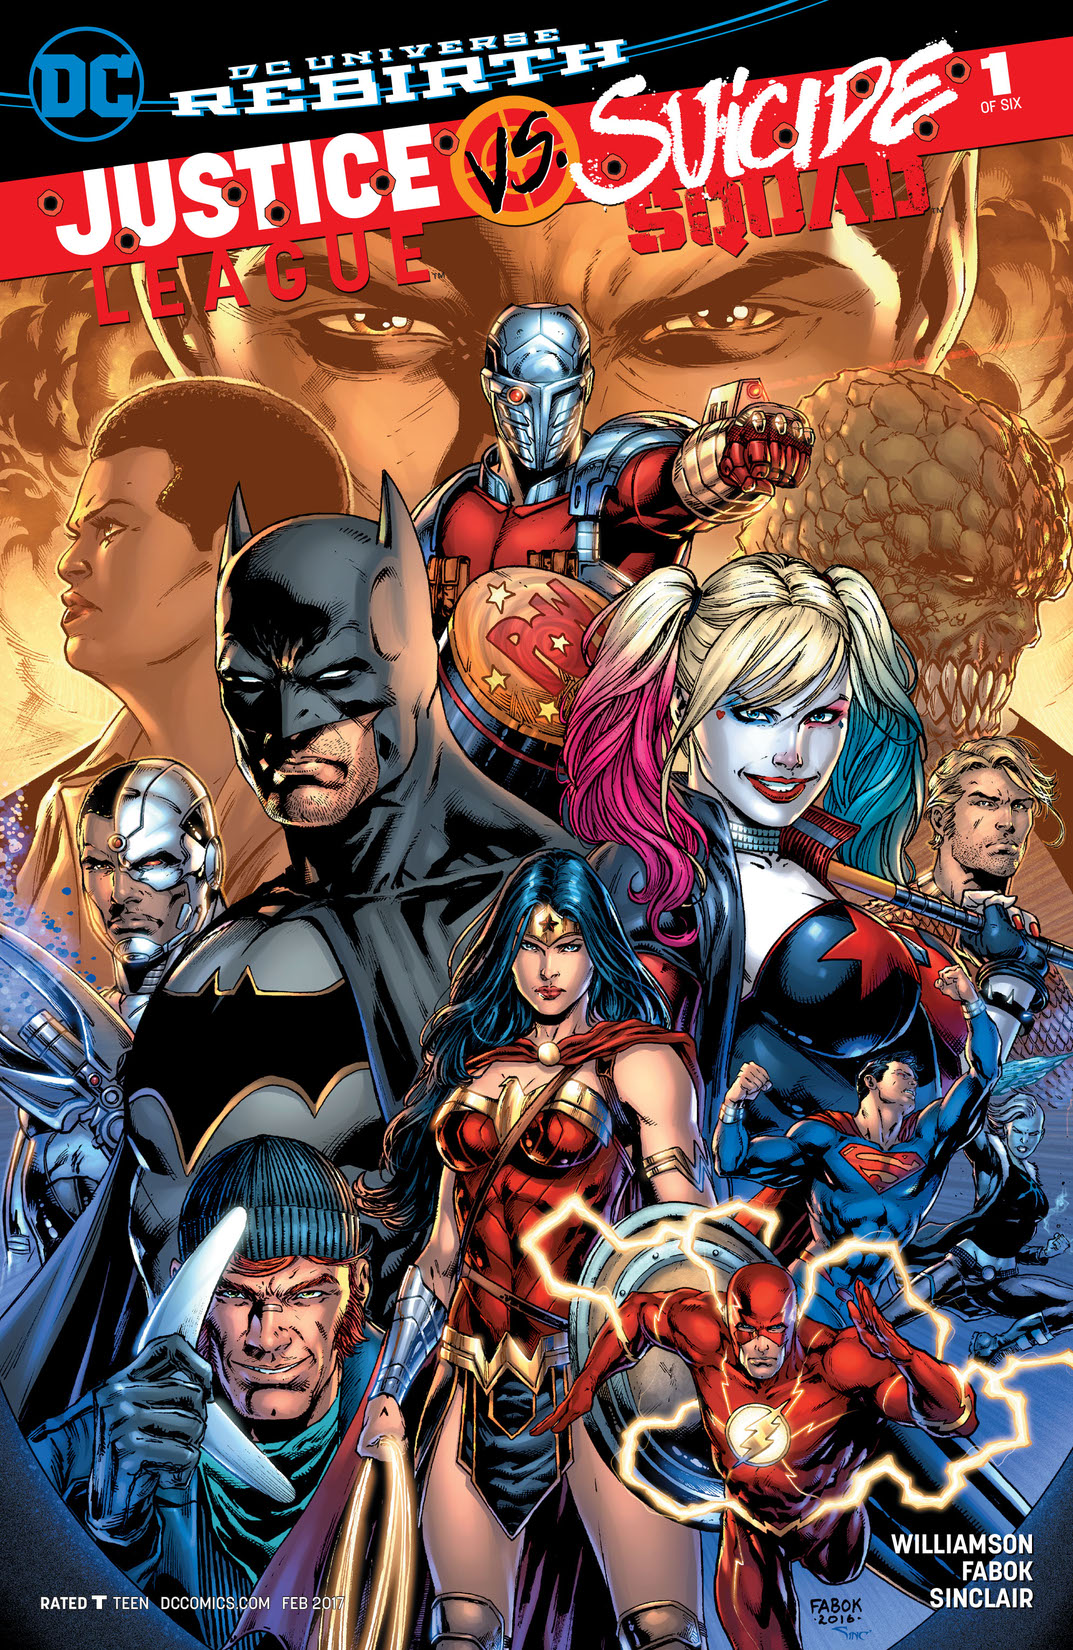 Justice League vs. Suicide Squad #1 preview images